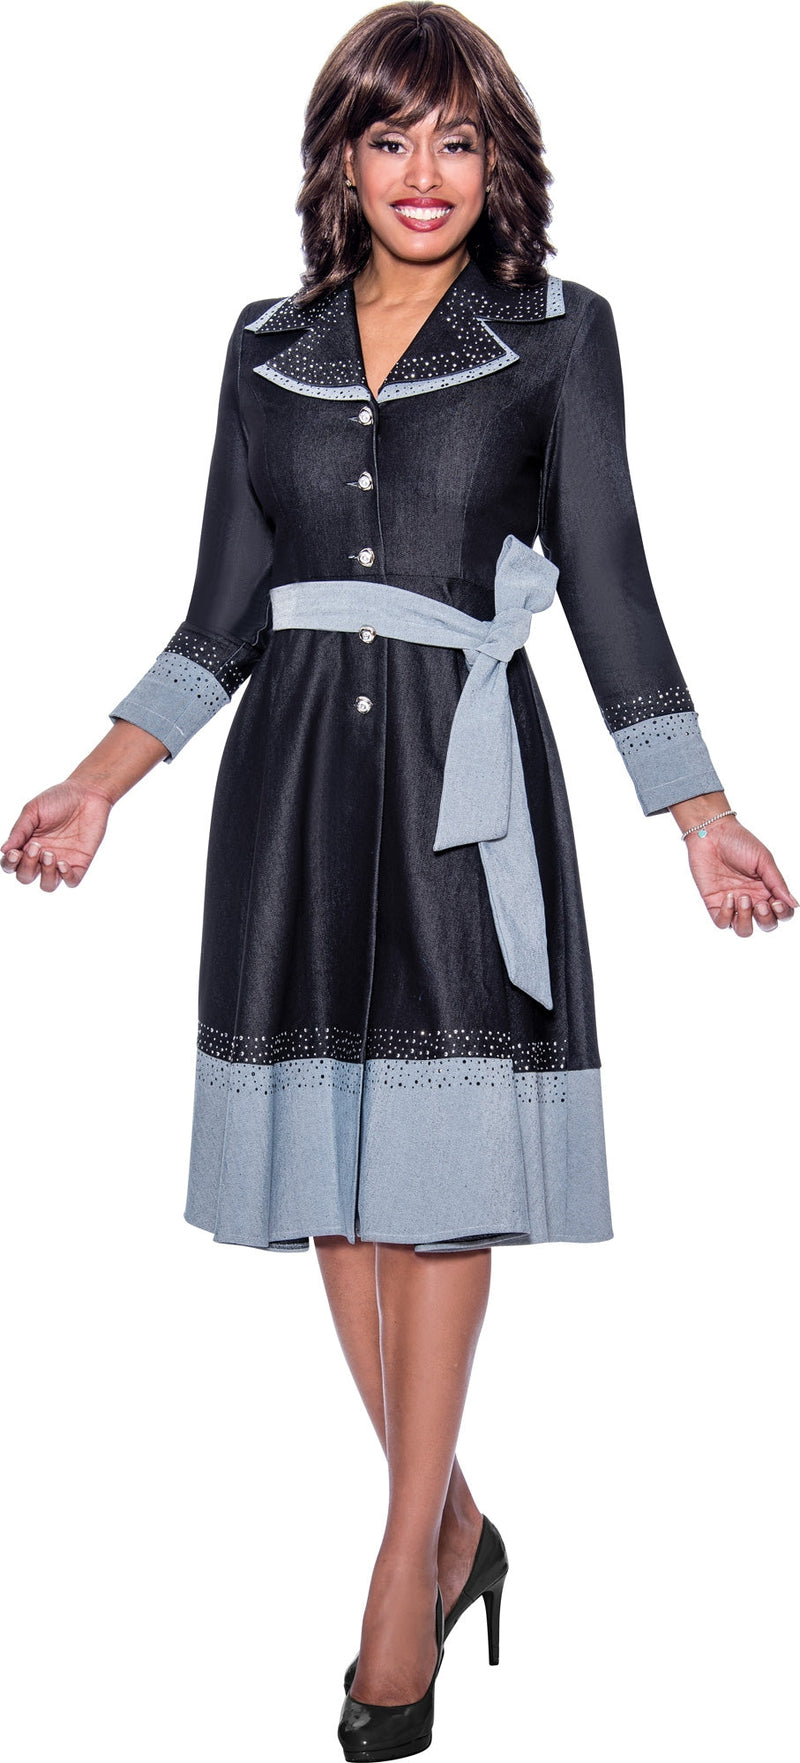 Devine Sport Denim Dress 63651 - Church Suits For Less